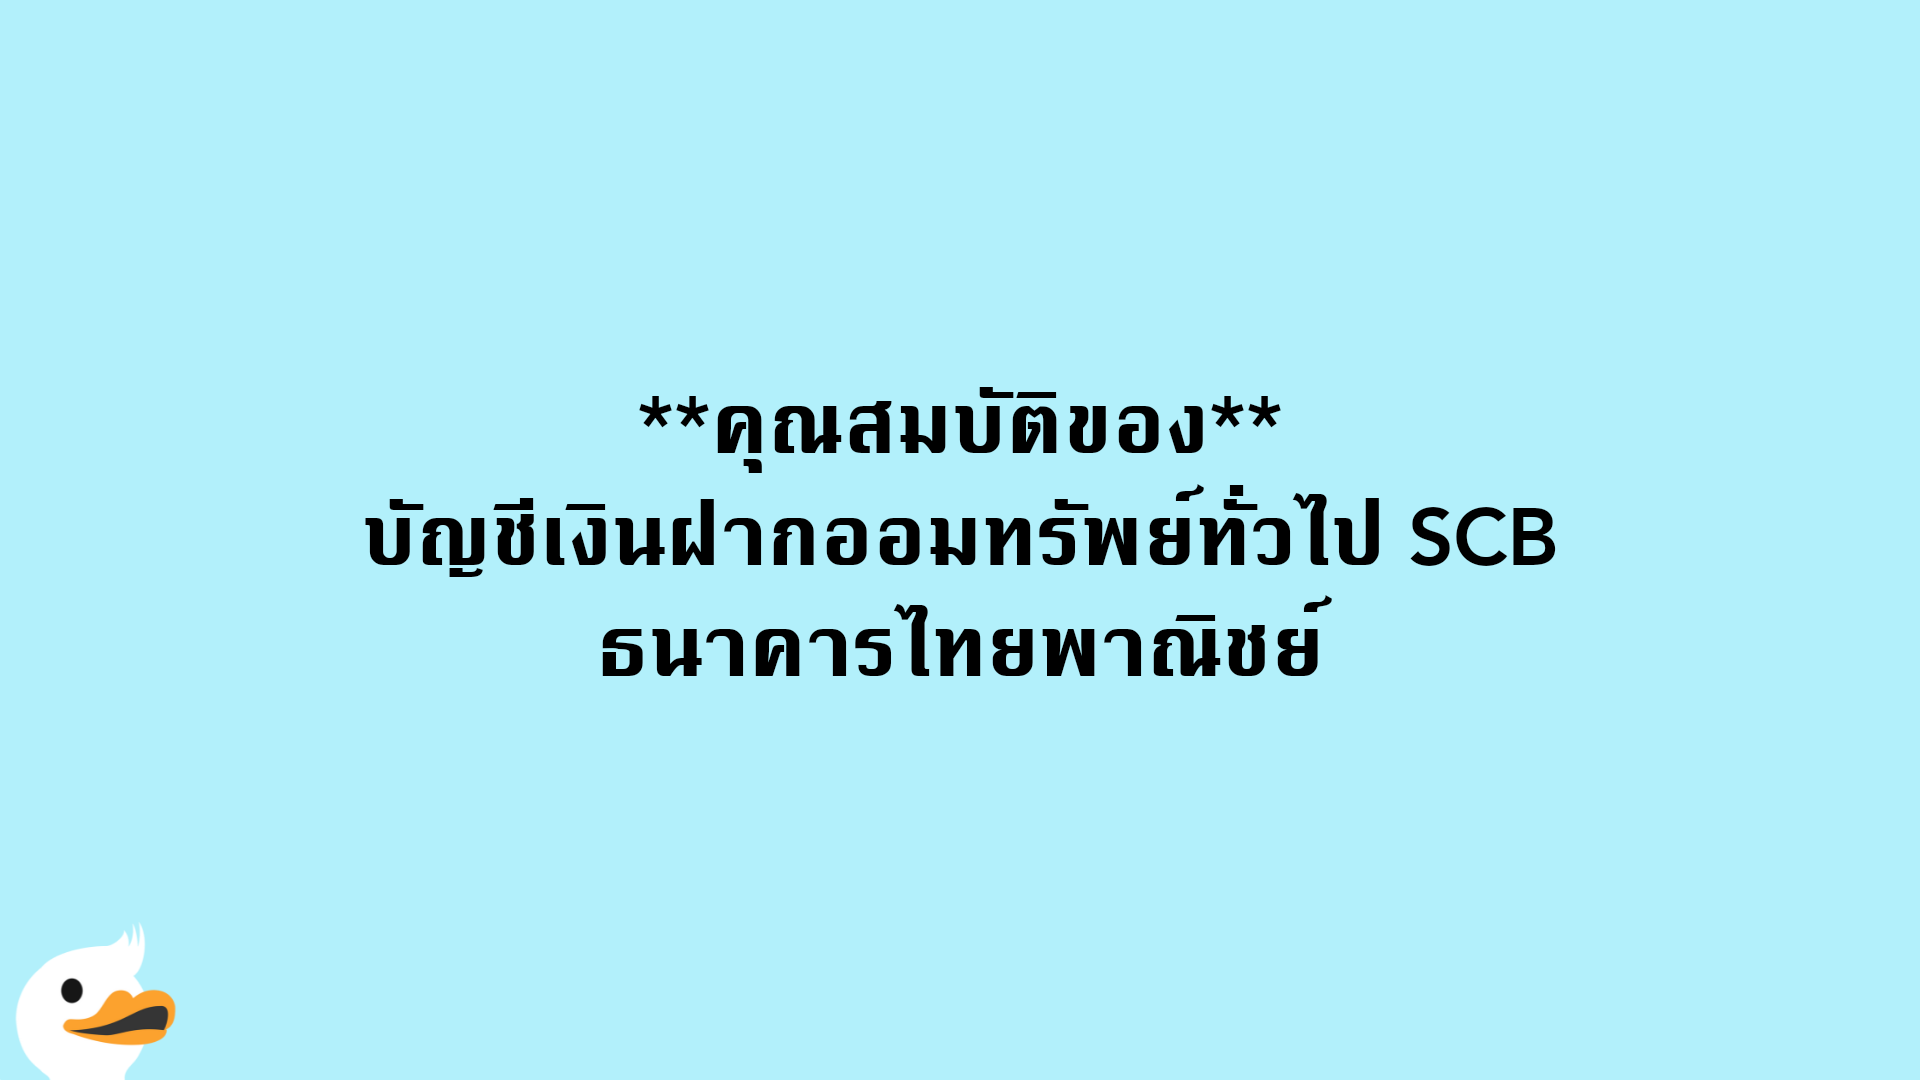 คุณสมบัติของบัญชีเงินฝากออมทรัพย์ทั่วไป SCB ธนาคารไทยพาณิชย์